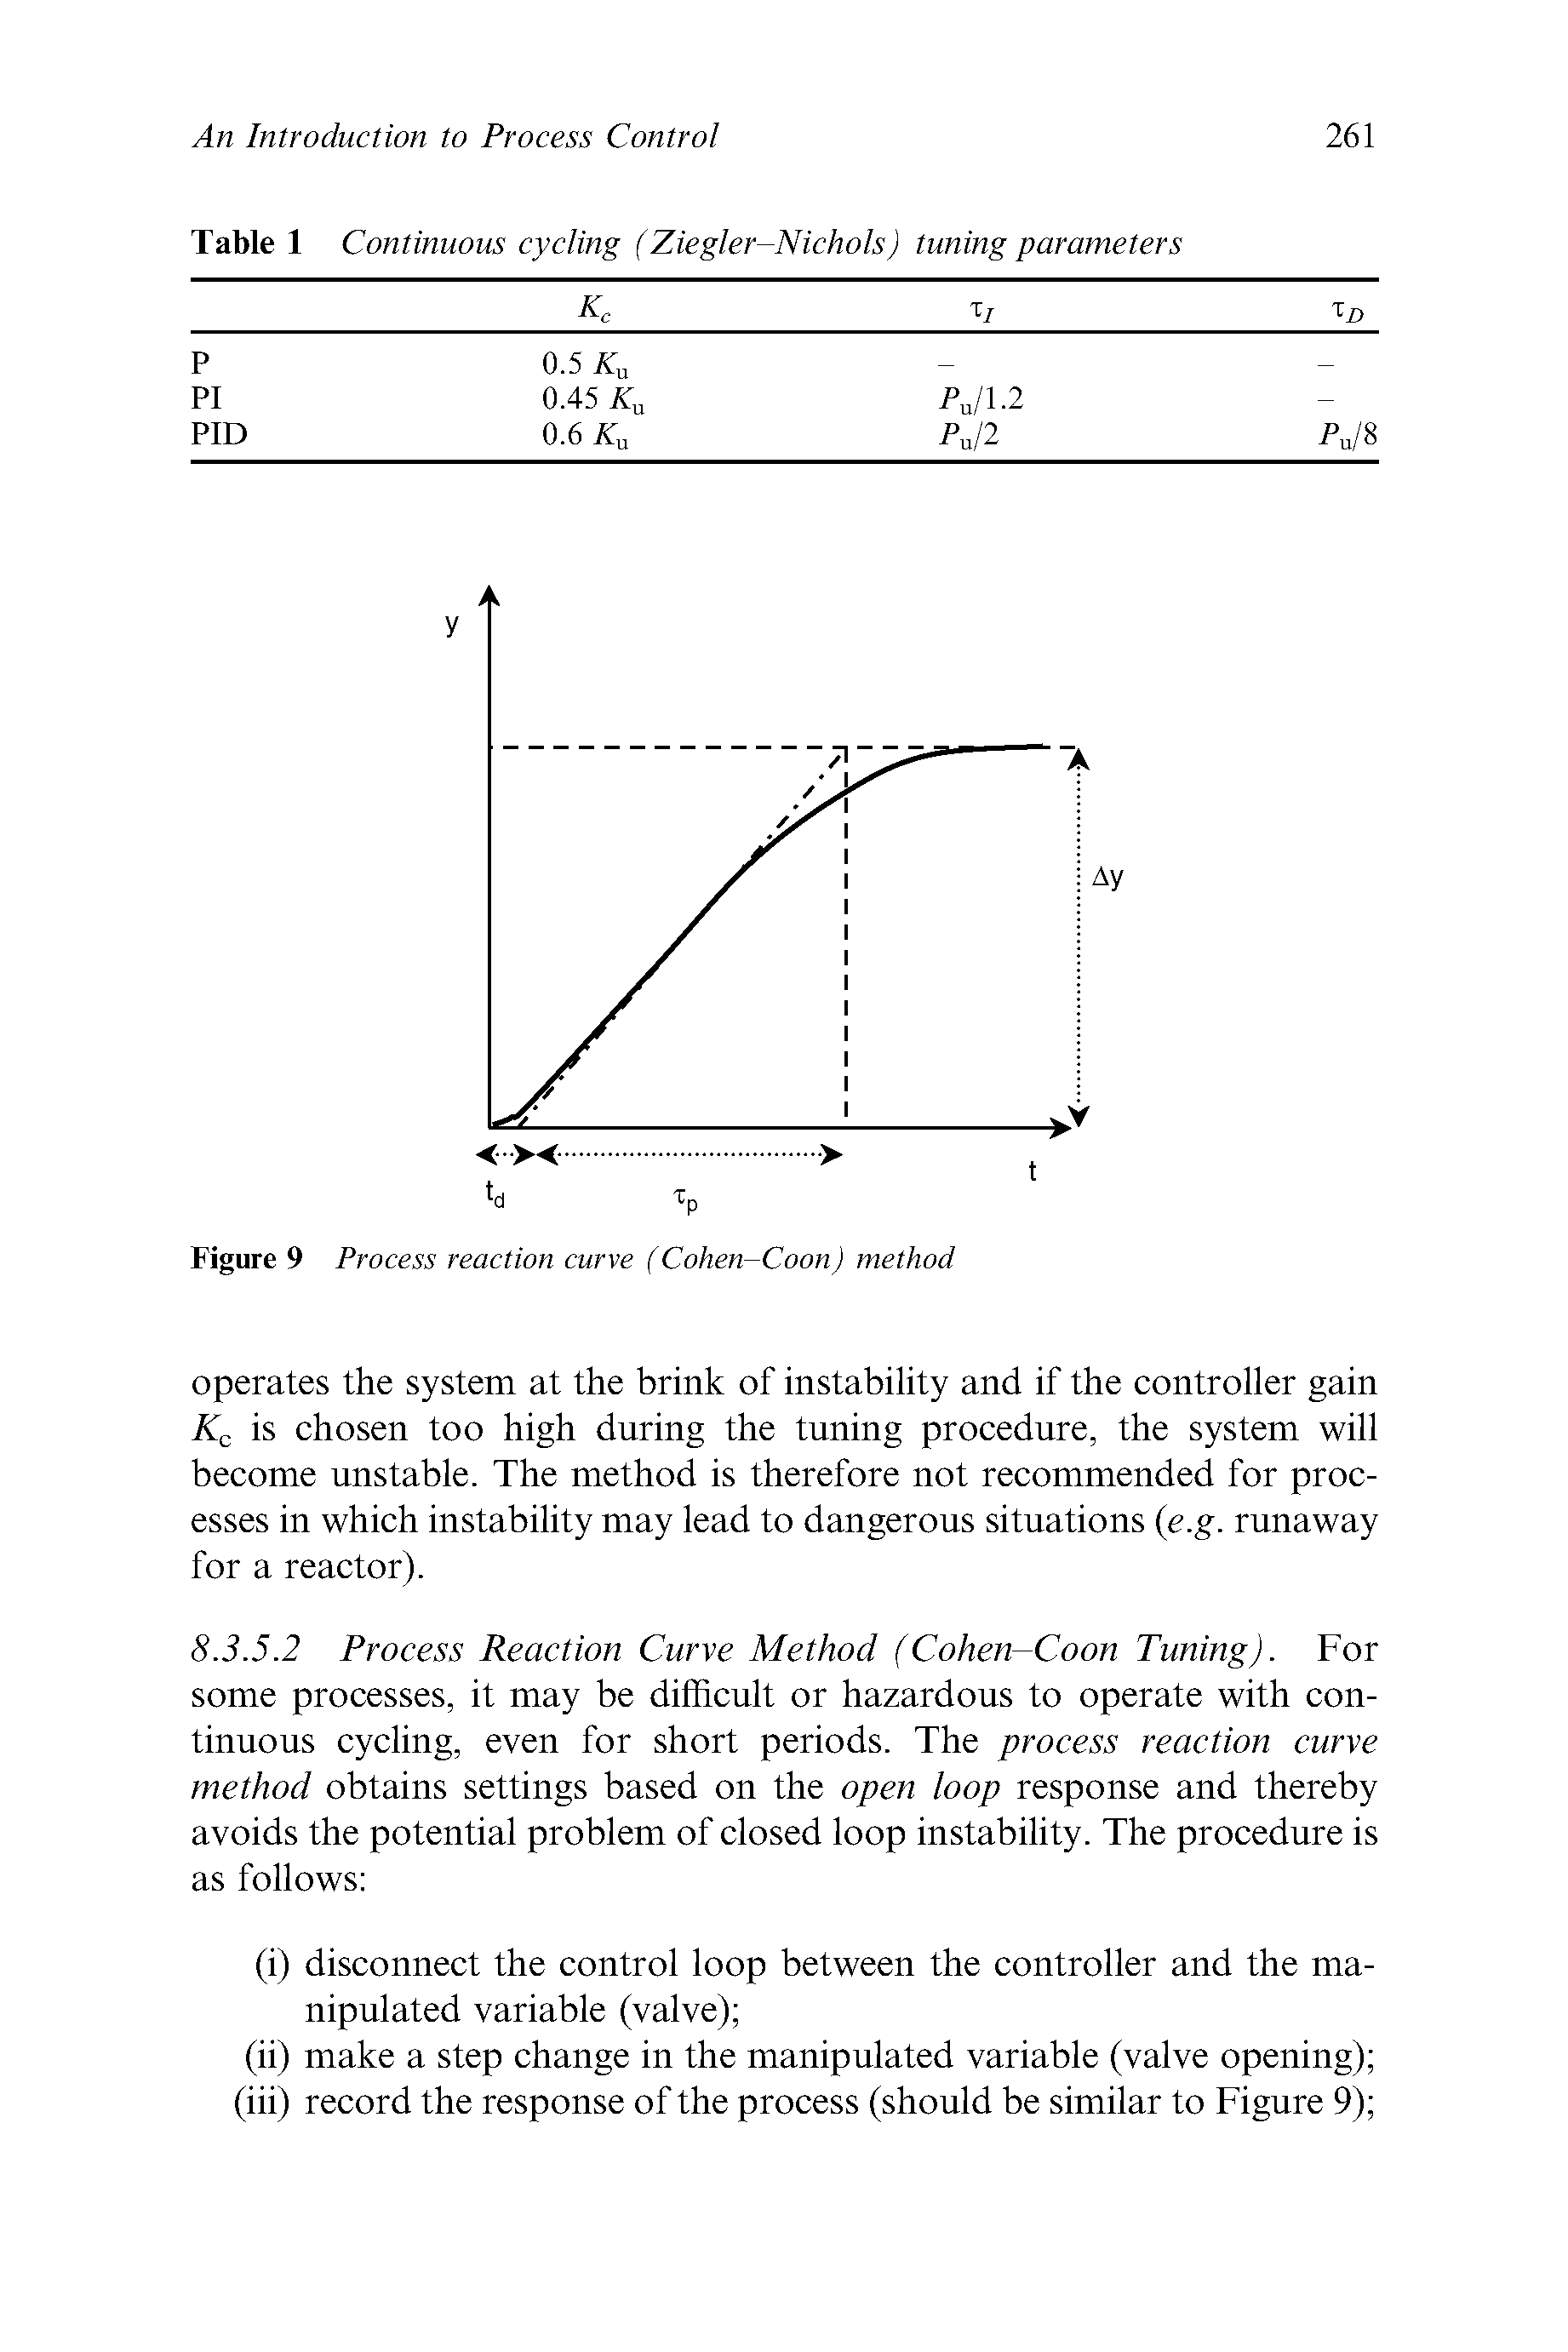 Figure 9 Process reaction curve (Cohen-Coon) method...